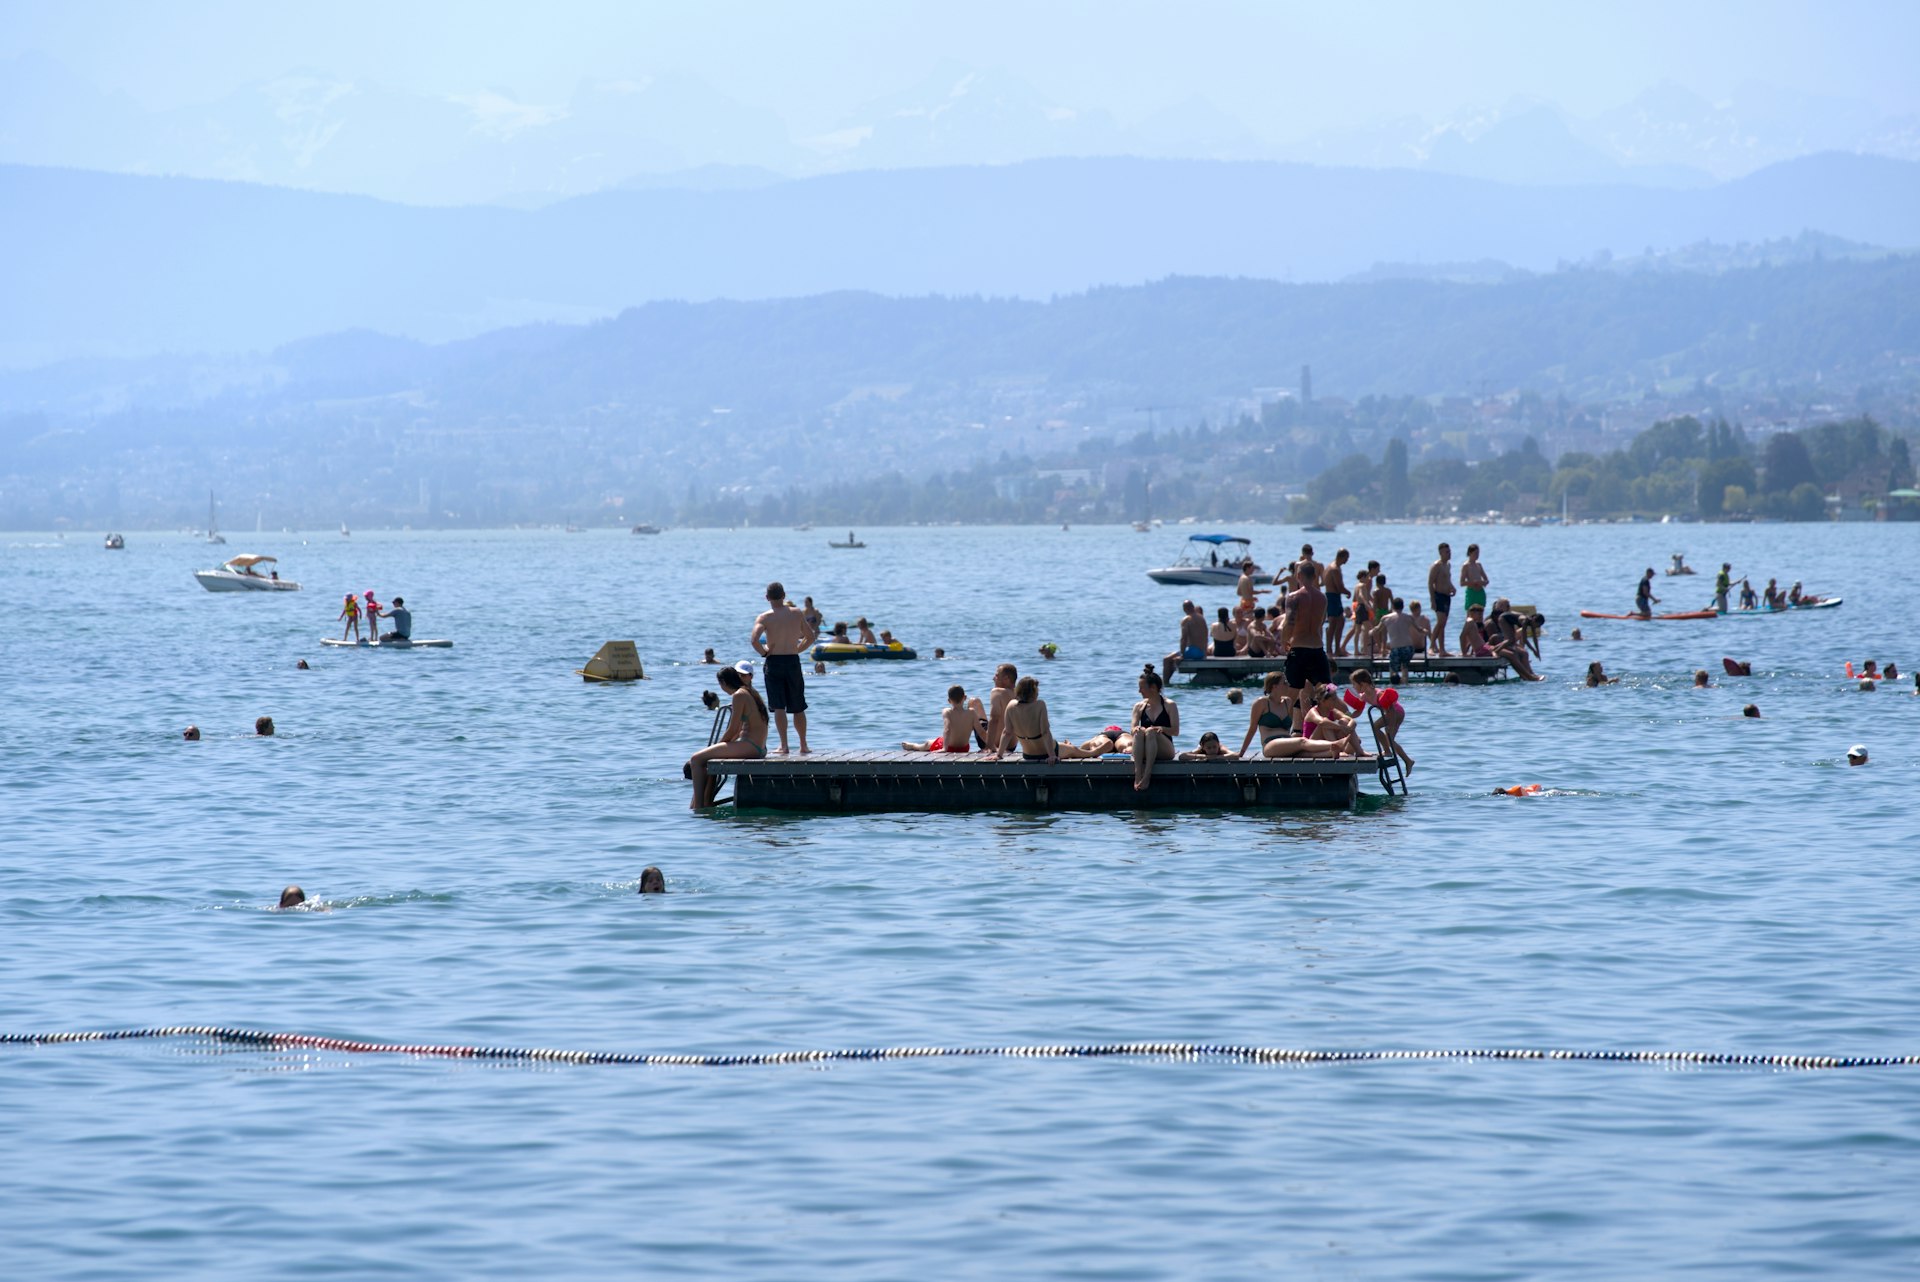 People swimming and sunbathing on floats on Lake Zürich, Zürich, Switzerland